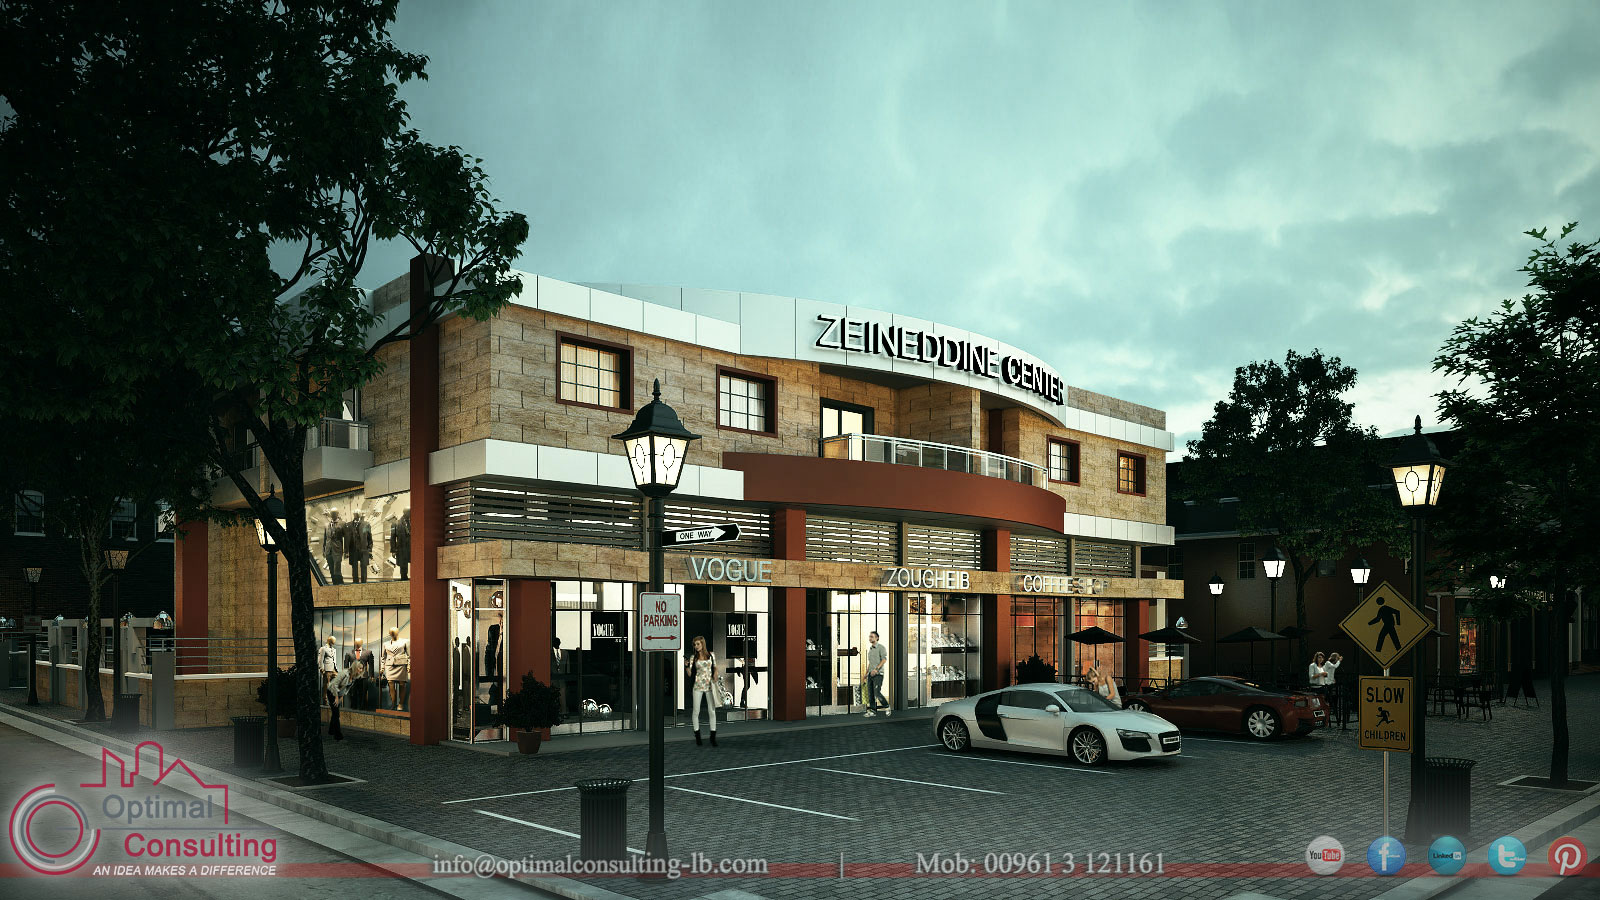 Zeineddine Mall